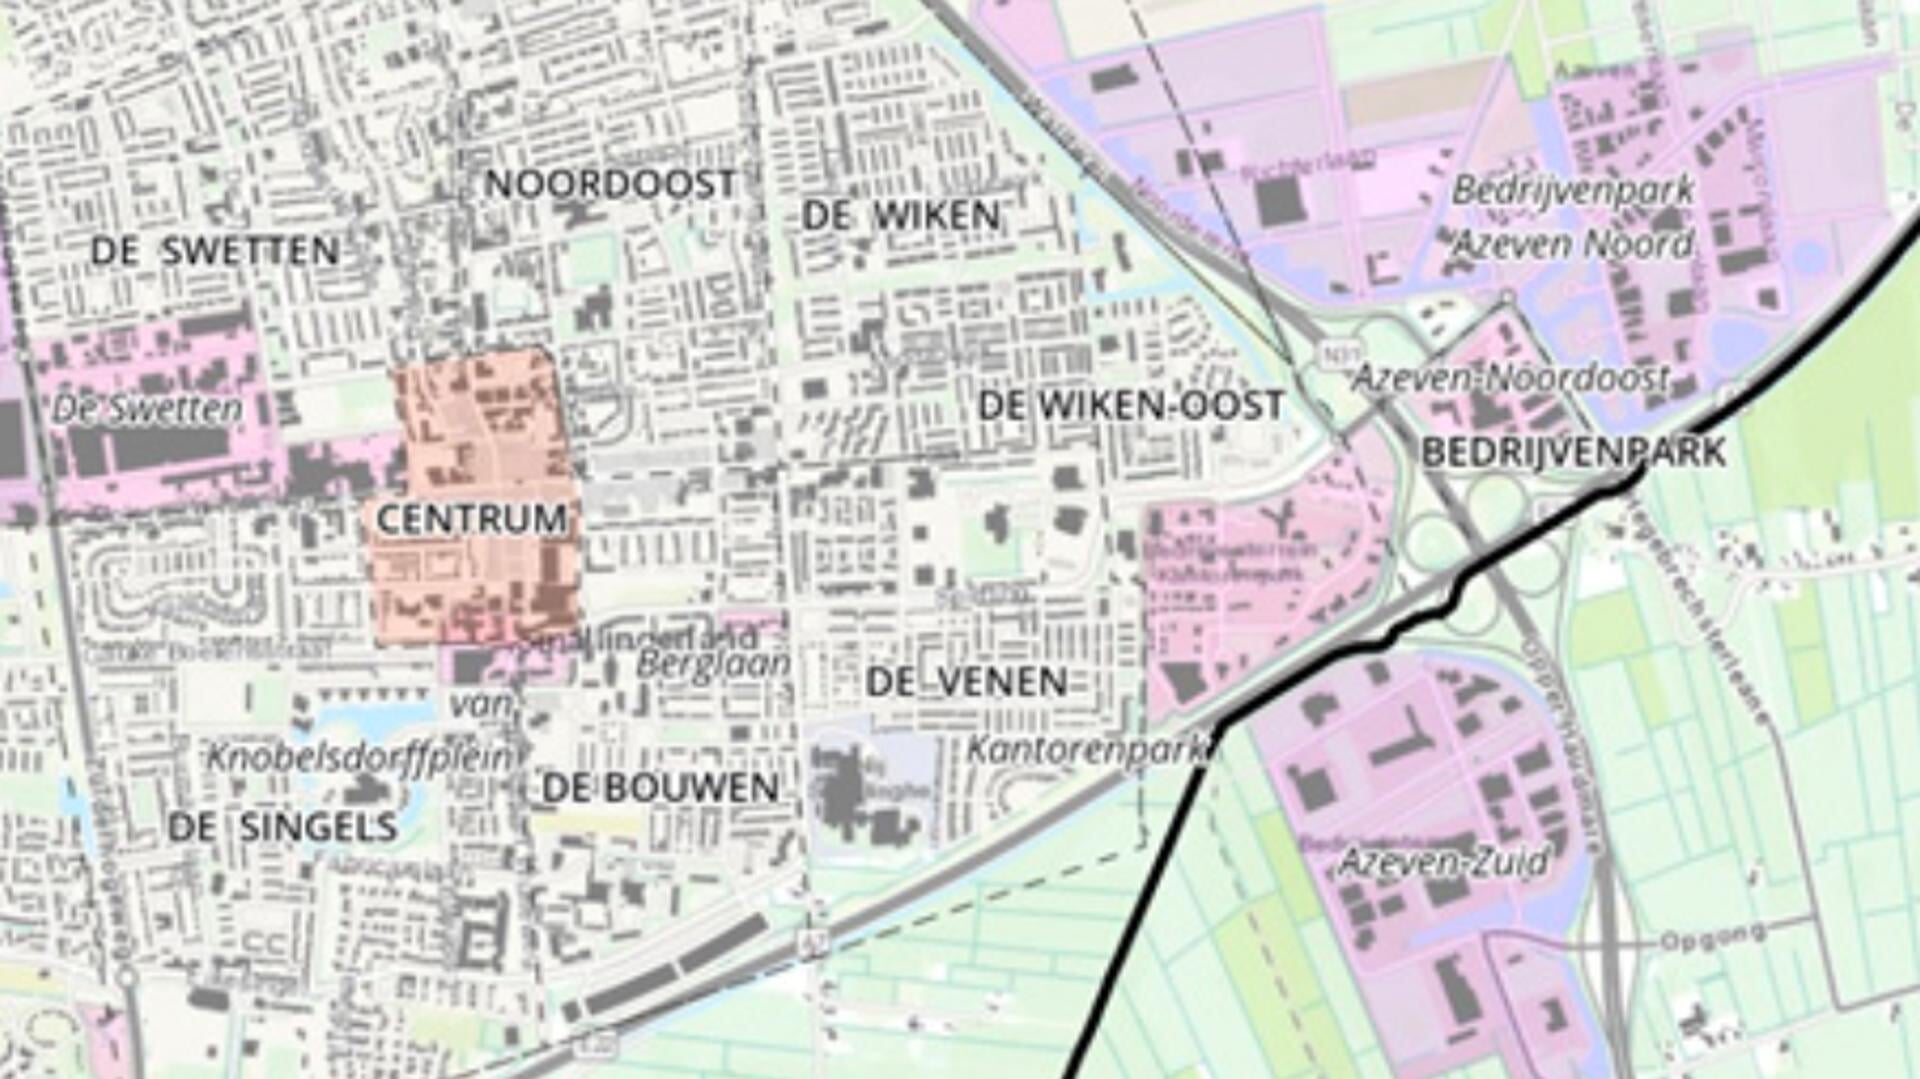 Bedrijvenpark A7 Noord (rechtsboven) mag van Smallingerland tweemaal met tien hectare uitbreiden in oostelijke richting, bijna tot De Feart, de weg naar Drachtstercompagnie.